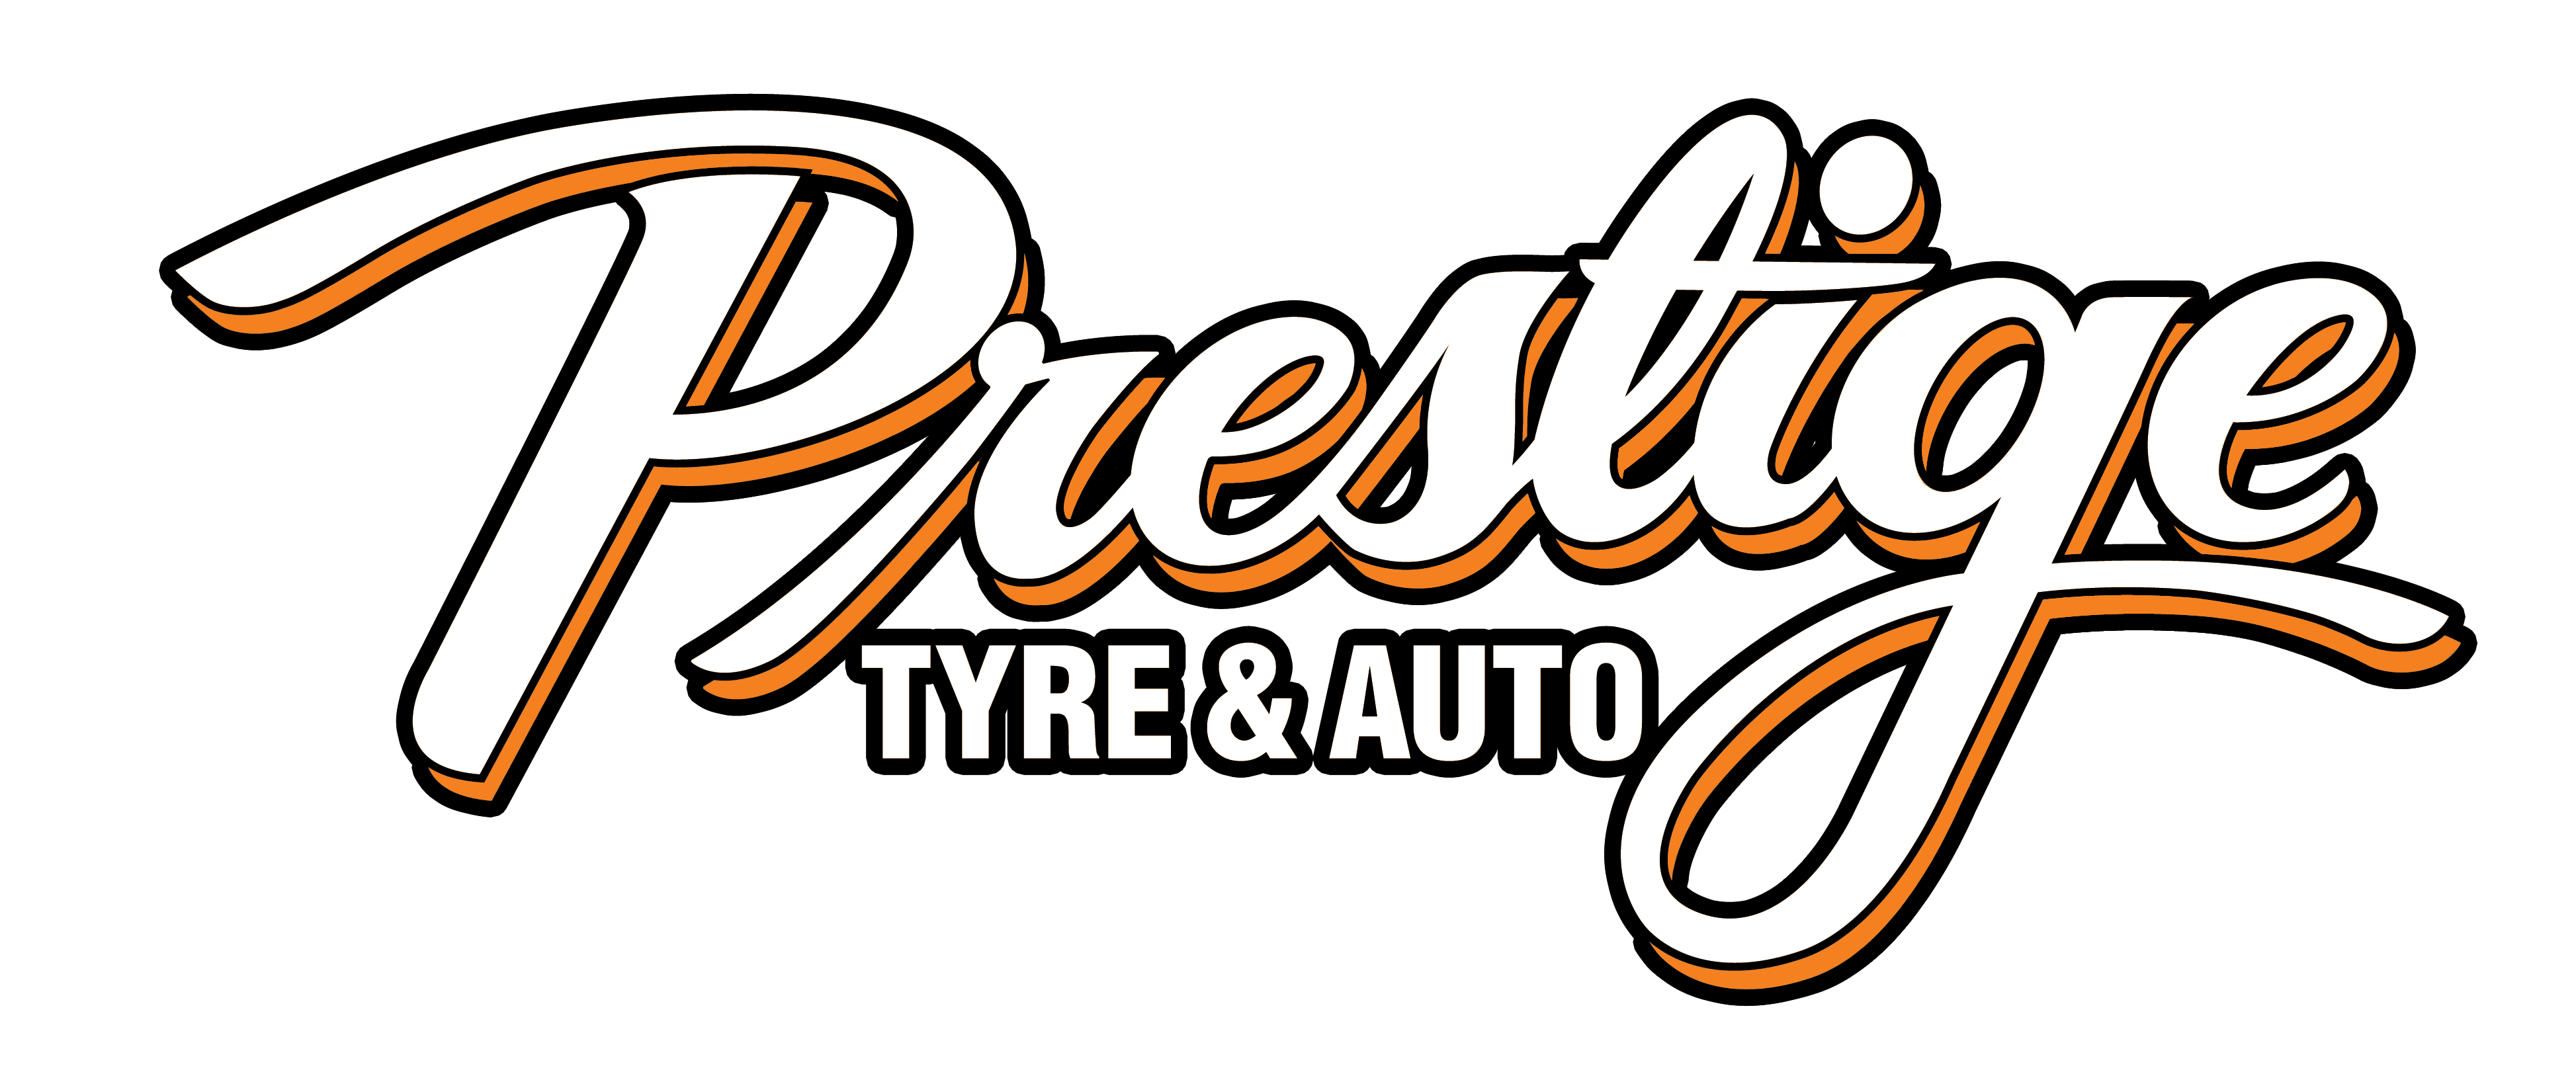 Prestige Tyre and Auto Service